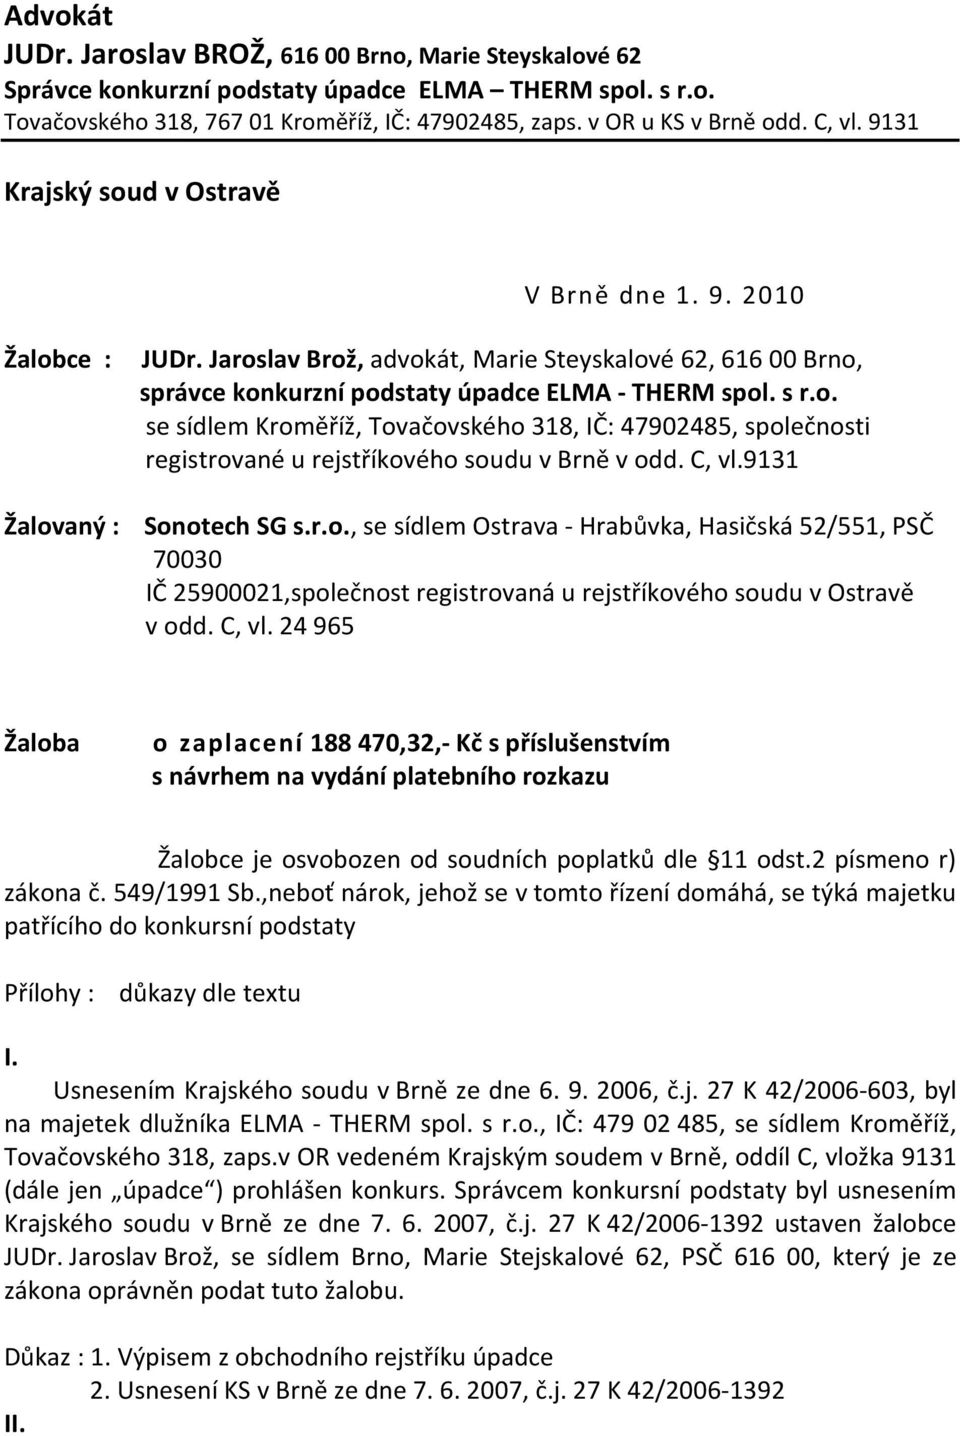 Advokát JUDr. Jaroslav BROŽ, Brno, Marie Steyskalové 62 - PDF Free Download